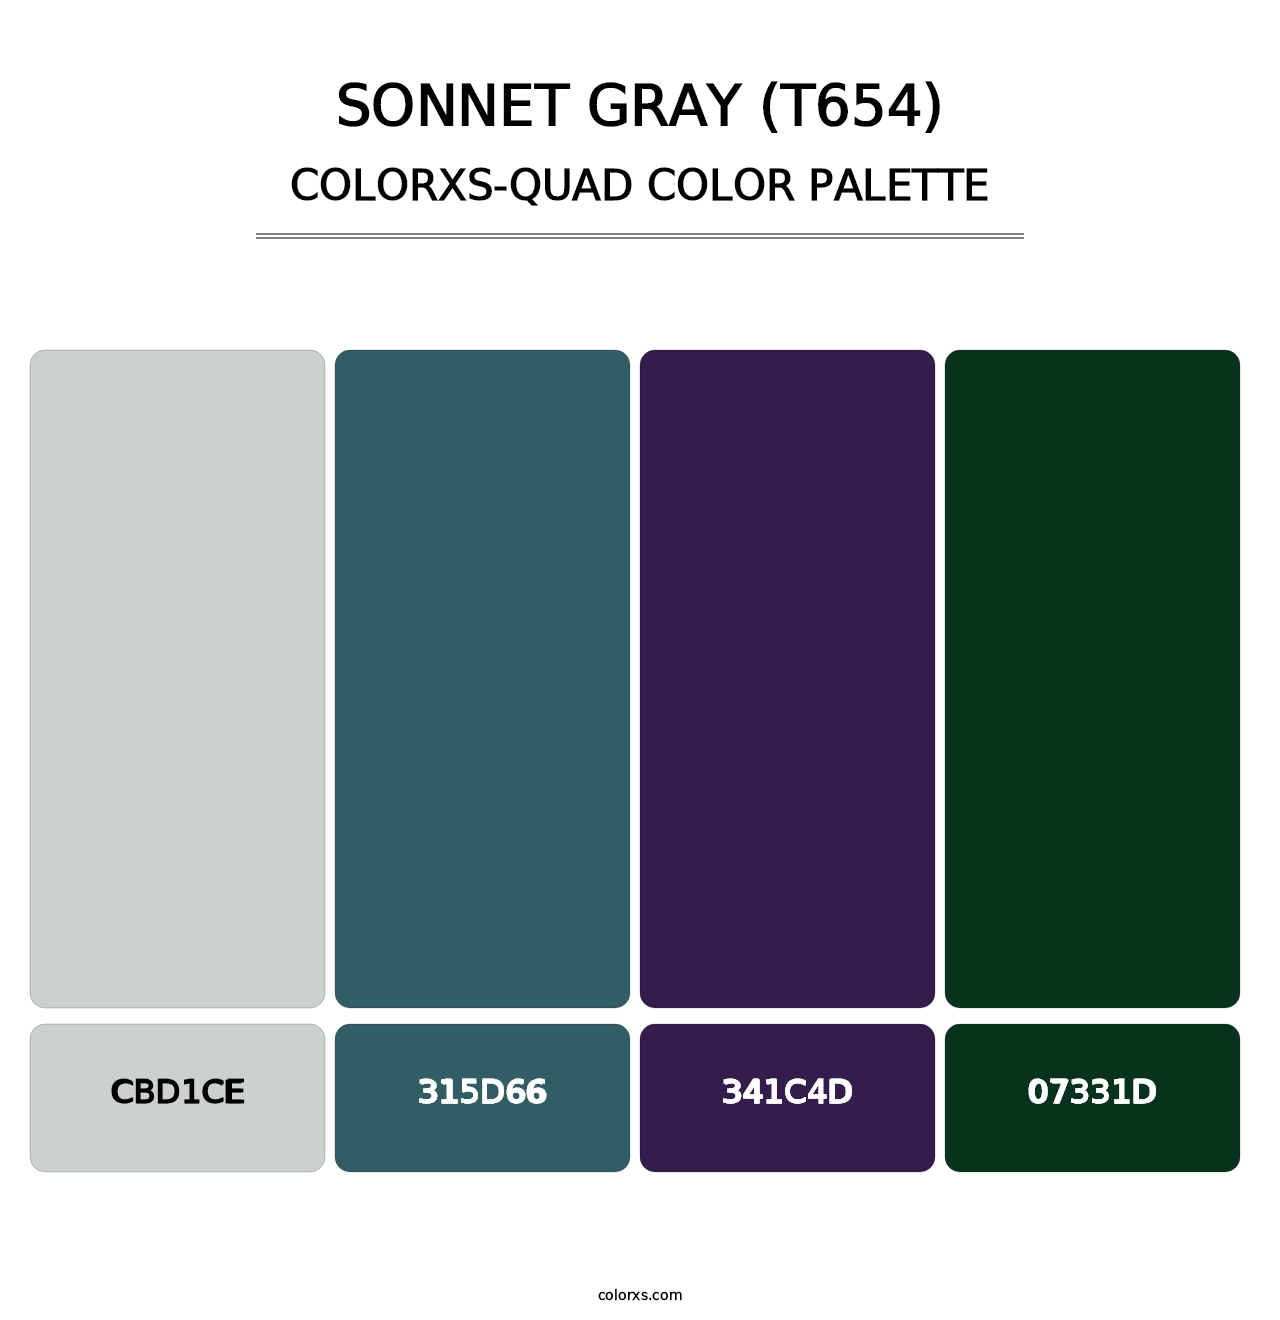 Sonnet Gray (T654) - Colorxs Quad Palette